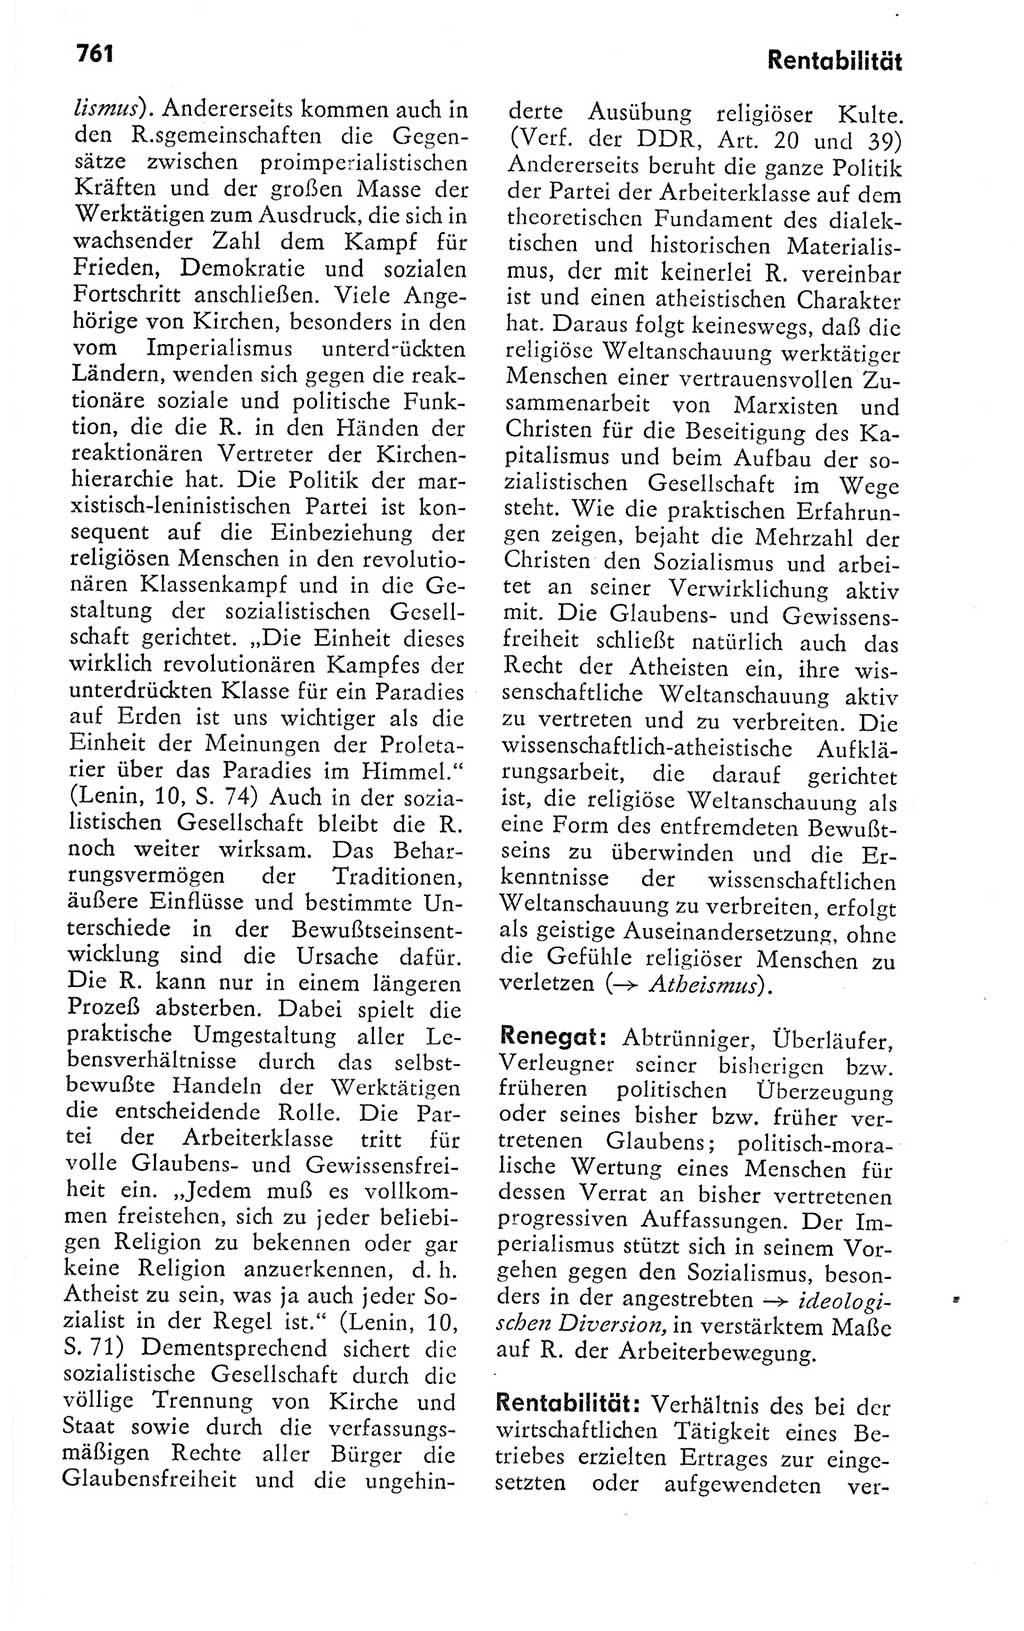 Kleines politisches Wörterbuch [Deutsche Demokratische Republik (DDR)] 1978, Seite 761 (Kl. pol. Wb. DDR 1978, S. 761)